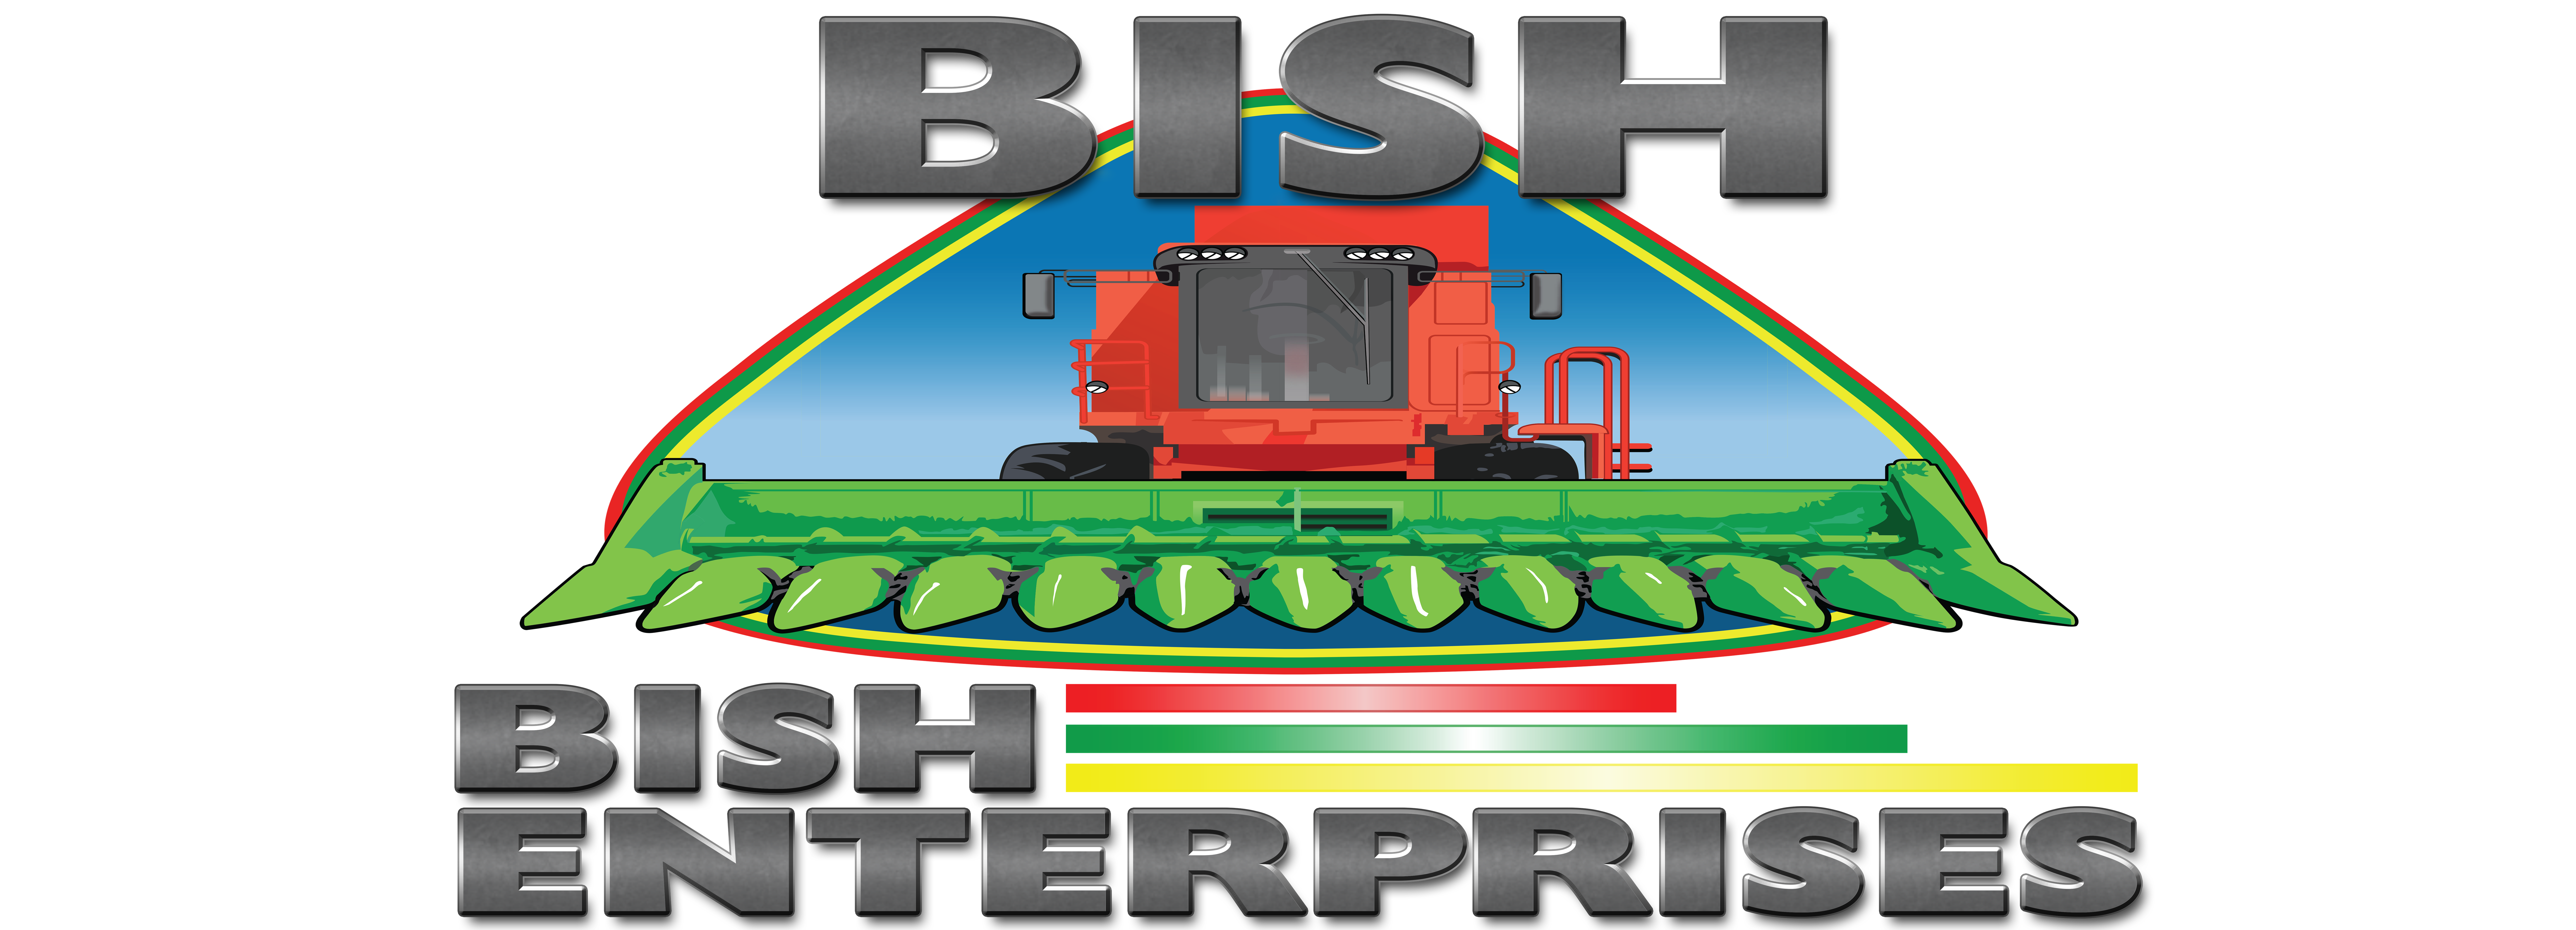 Bish Enterprises - Branding Guidelines Skewed